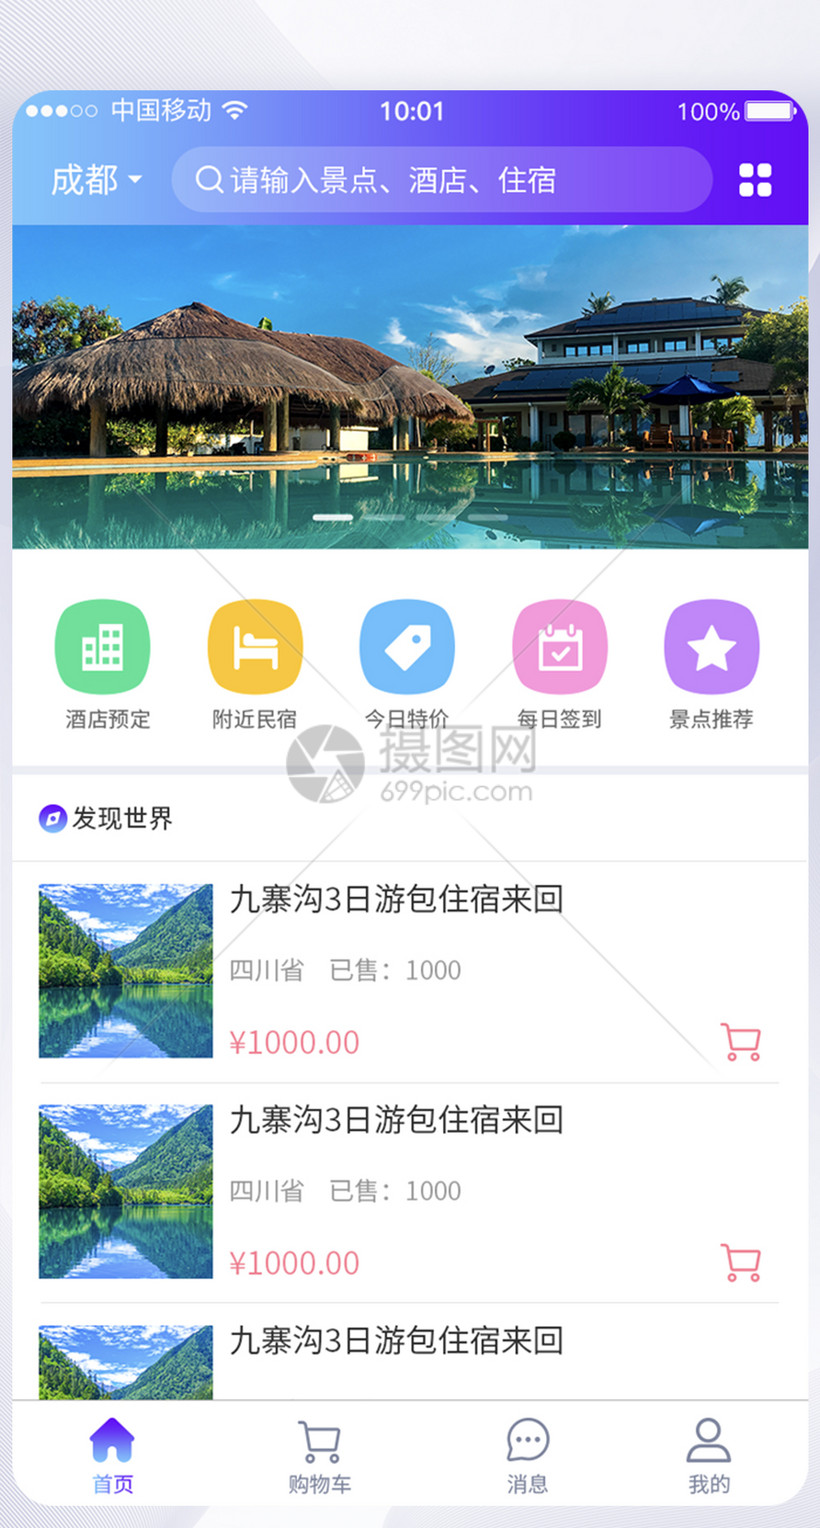 UI设计旅游APP首页界面图片